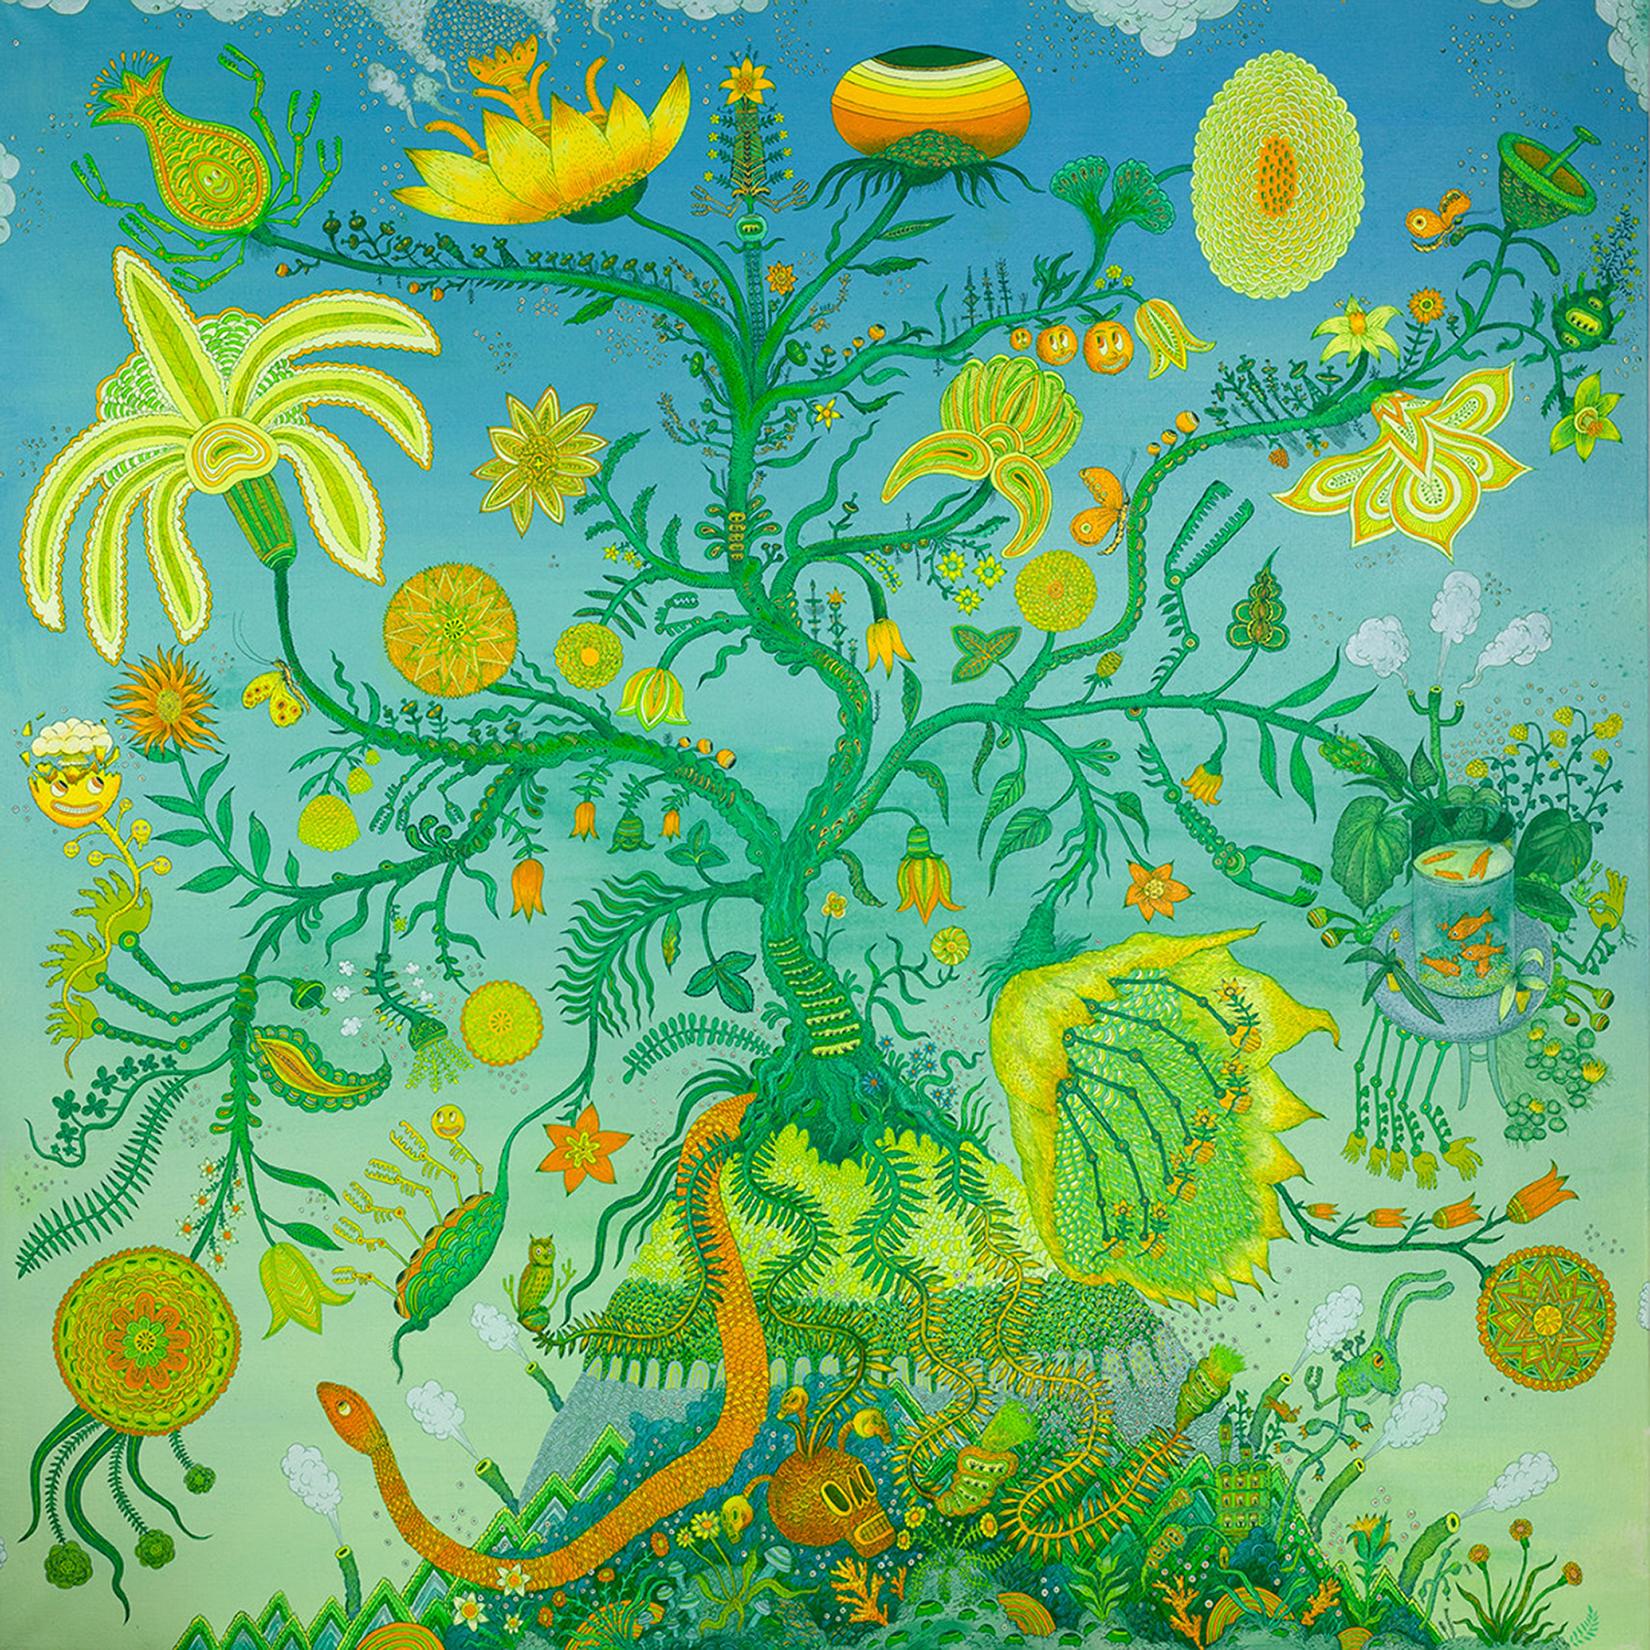 Peter Hamlin Abstract Painting – Baum des Lebens, Blau Grün Gelb Orange Futuristische botanische Landschaft, Tiere